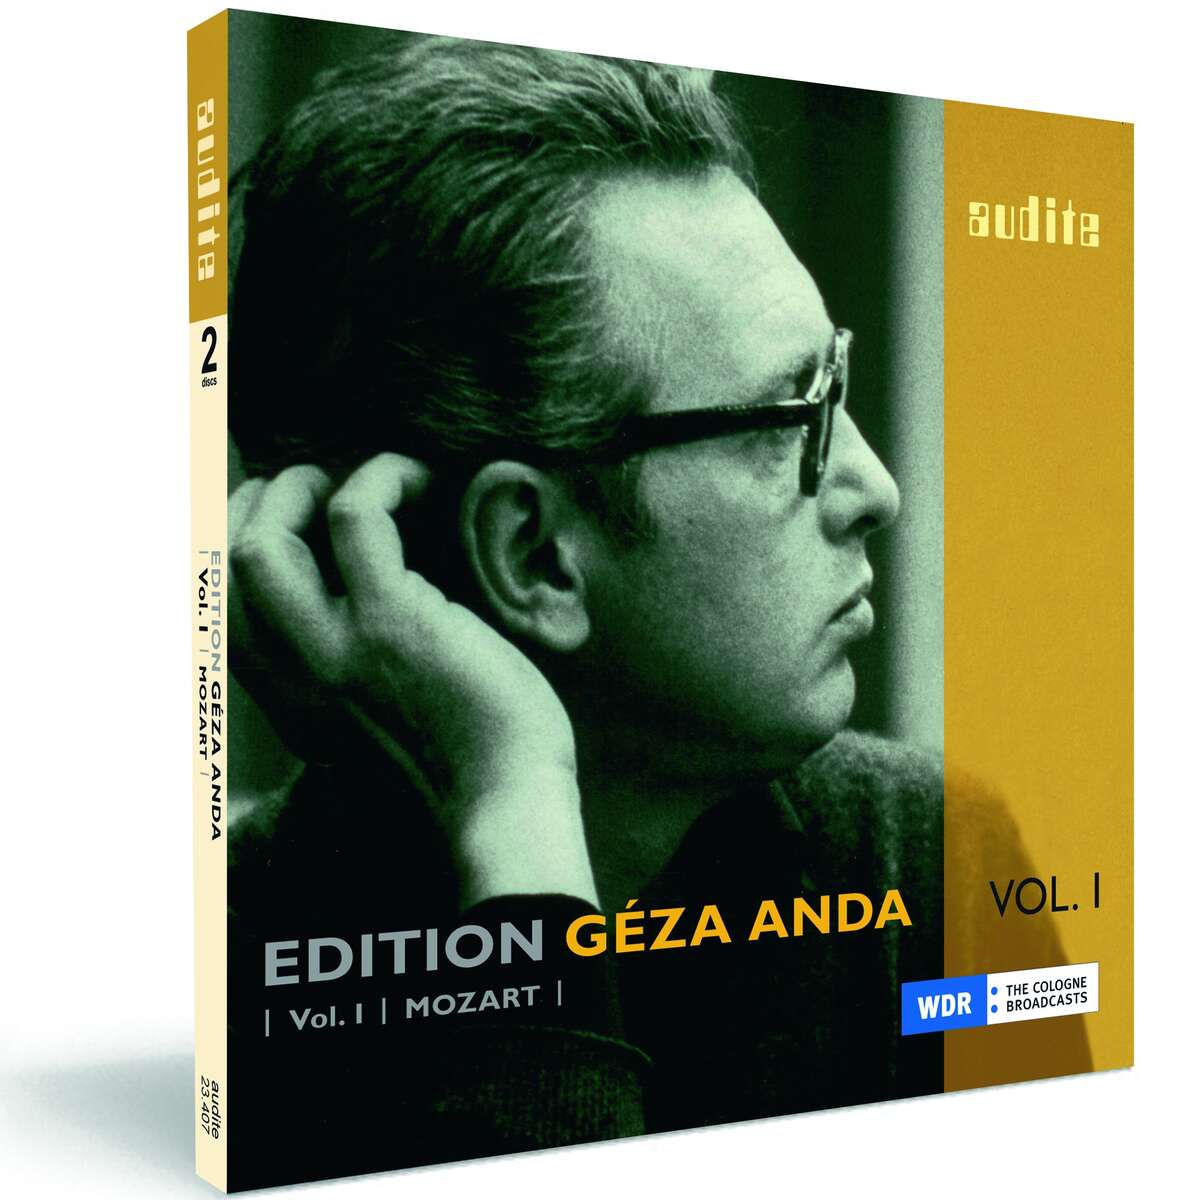 Geza Anda spielt Liszt u.a. Aufnahmen 1954 